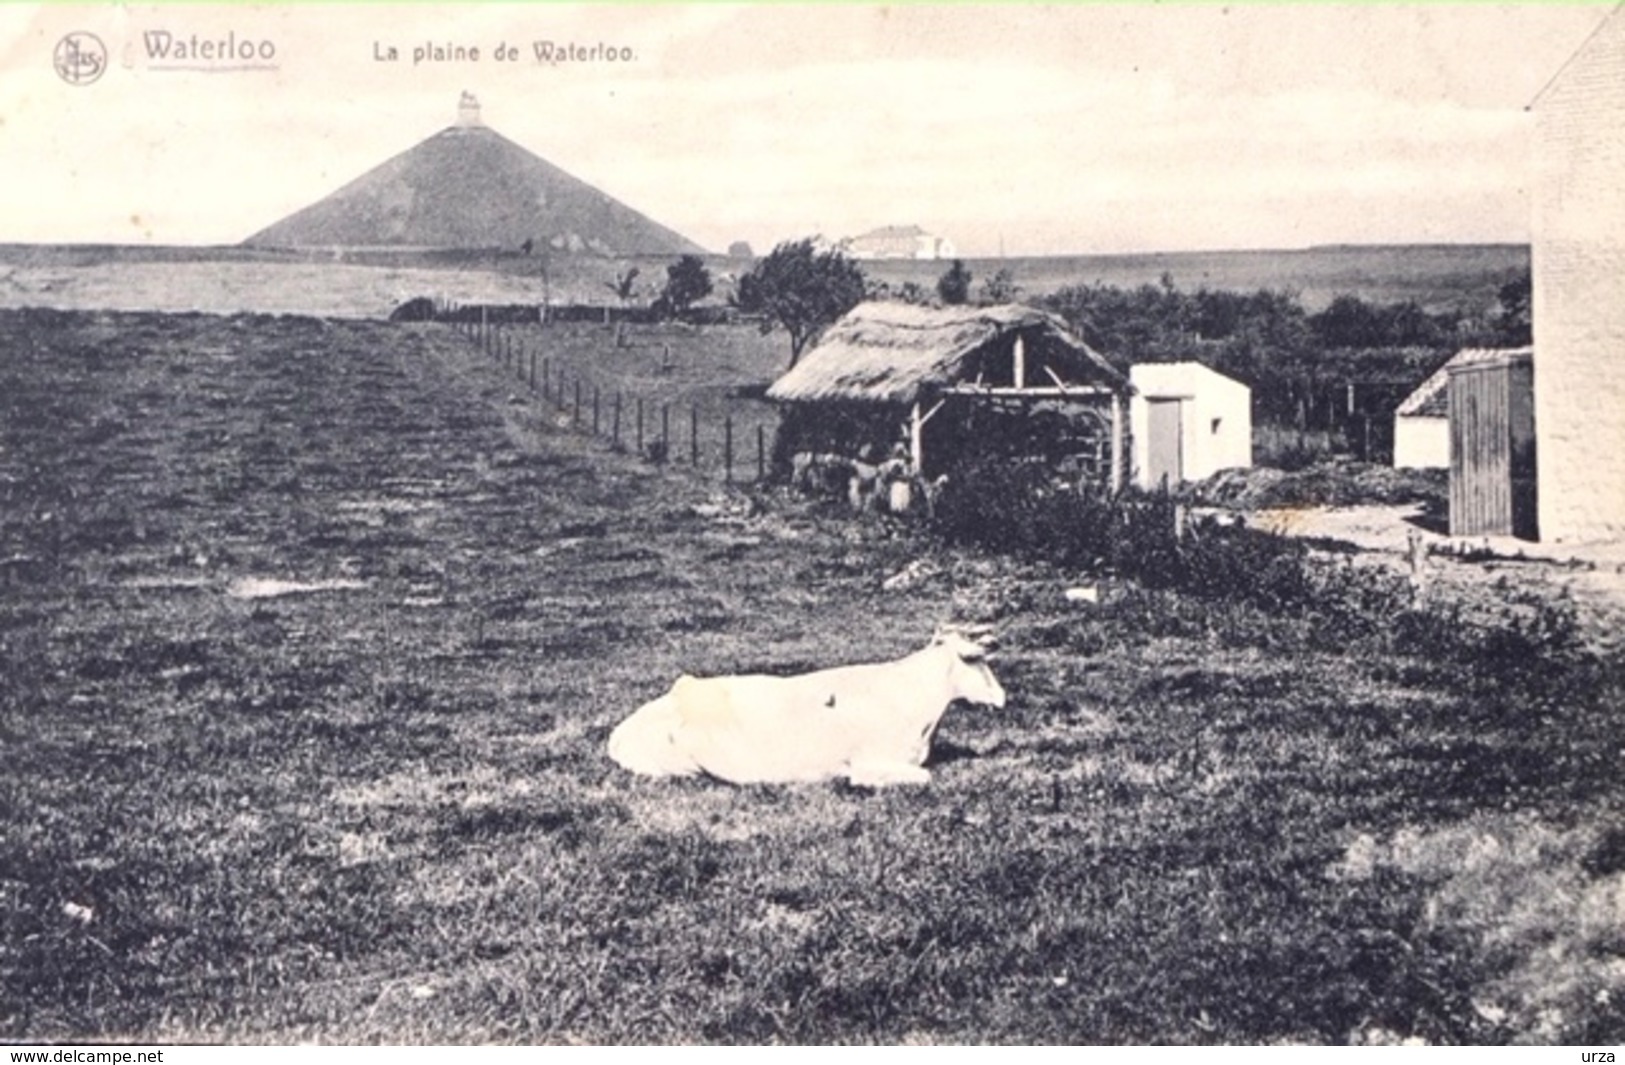 Waterloo-La Plaine De Waterloo-1912-Oh La Vache - Waterloo